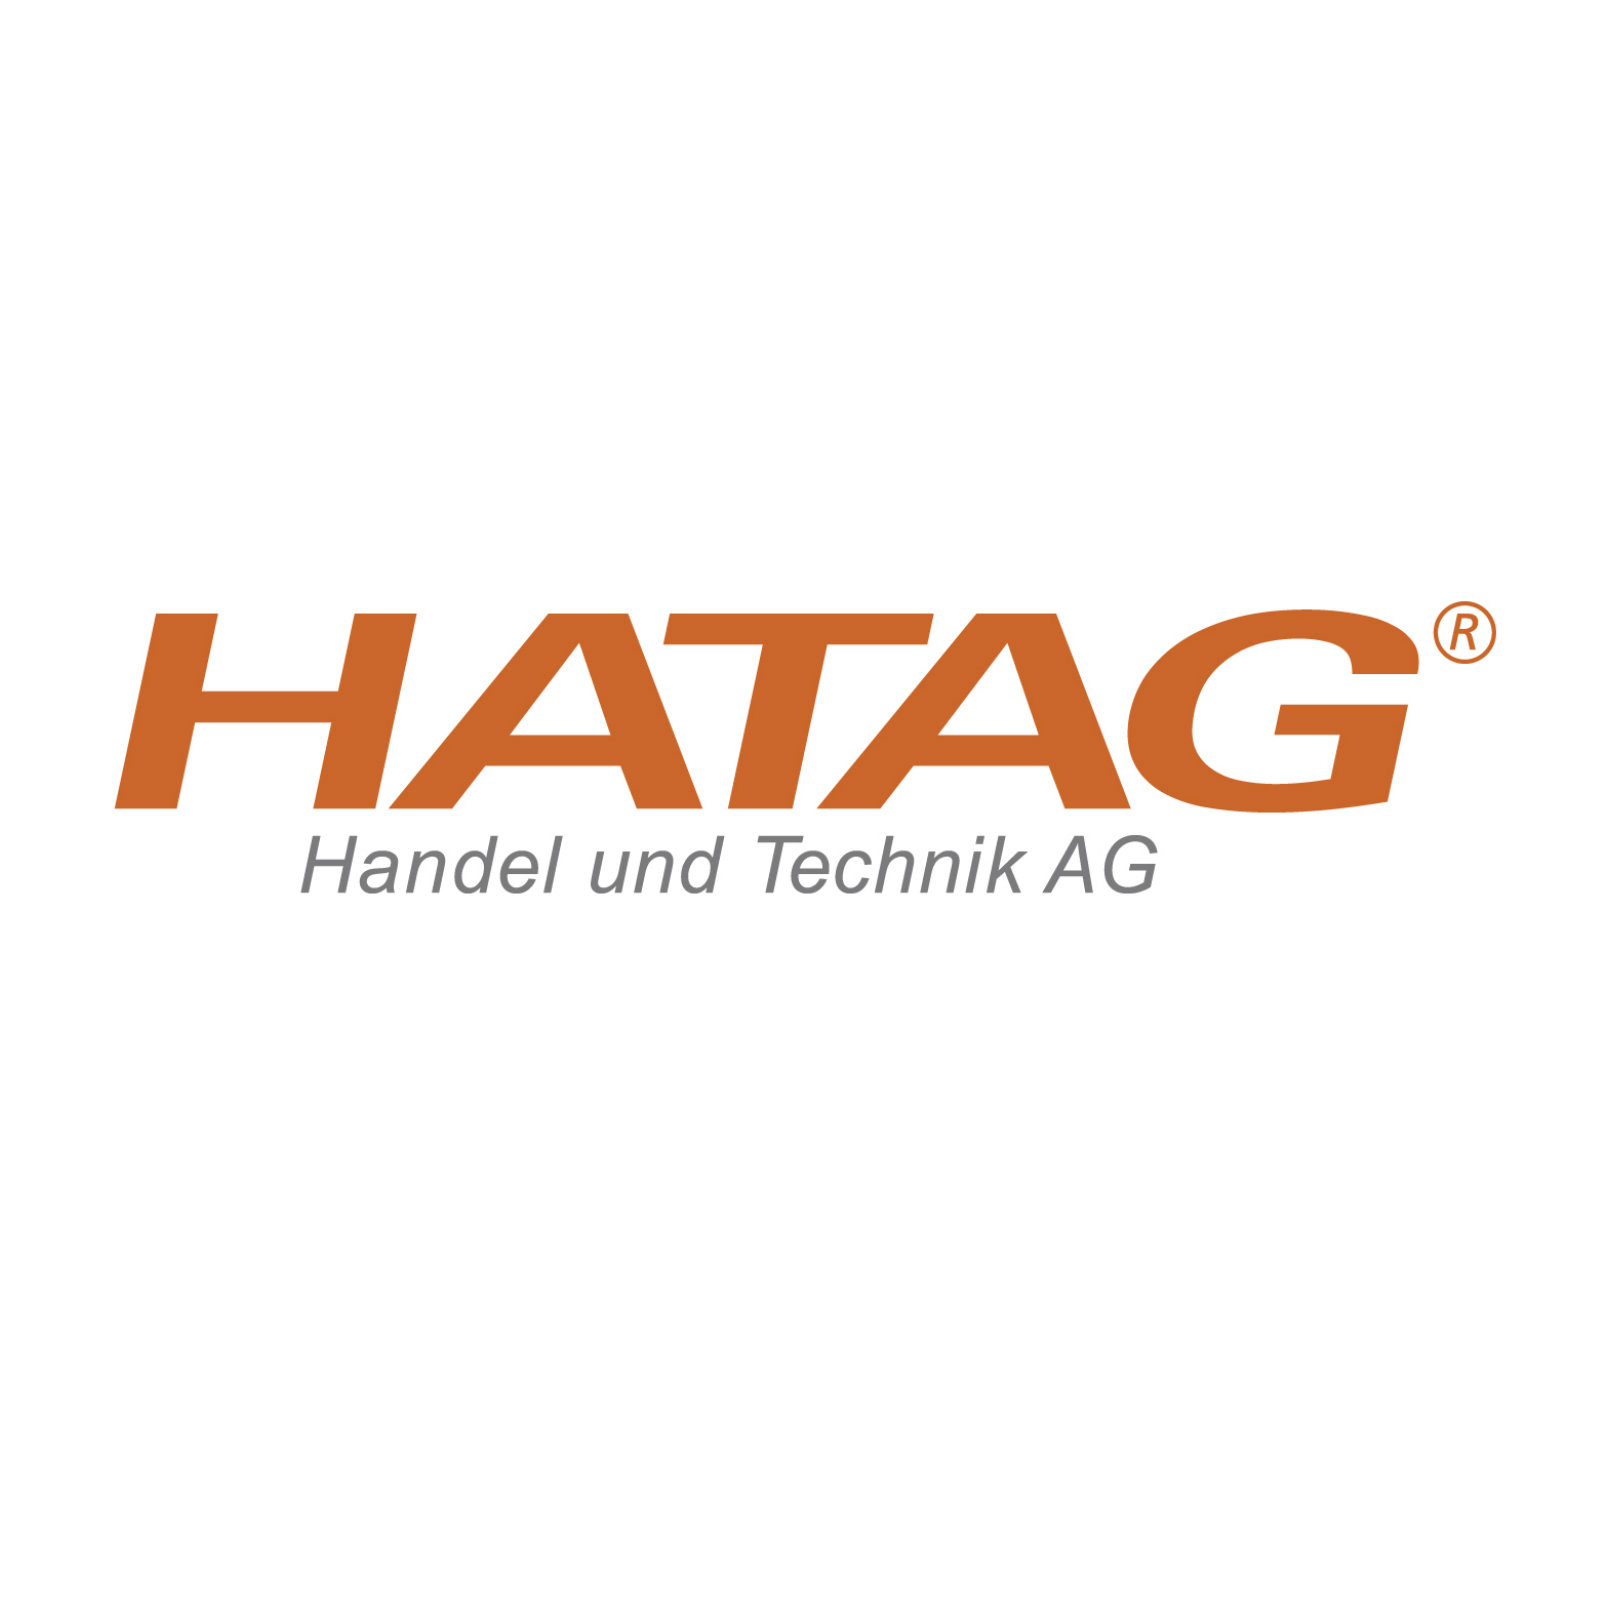 Switzerland / HATAG Handel und Technik AG